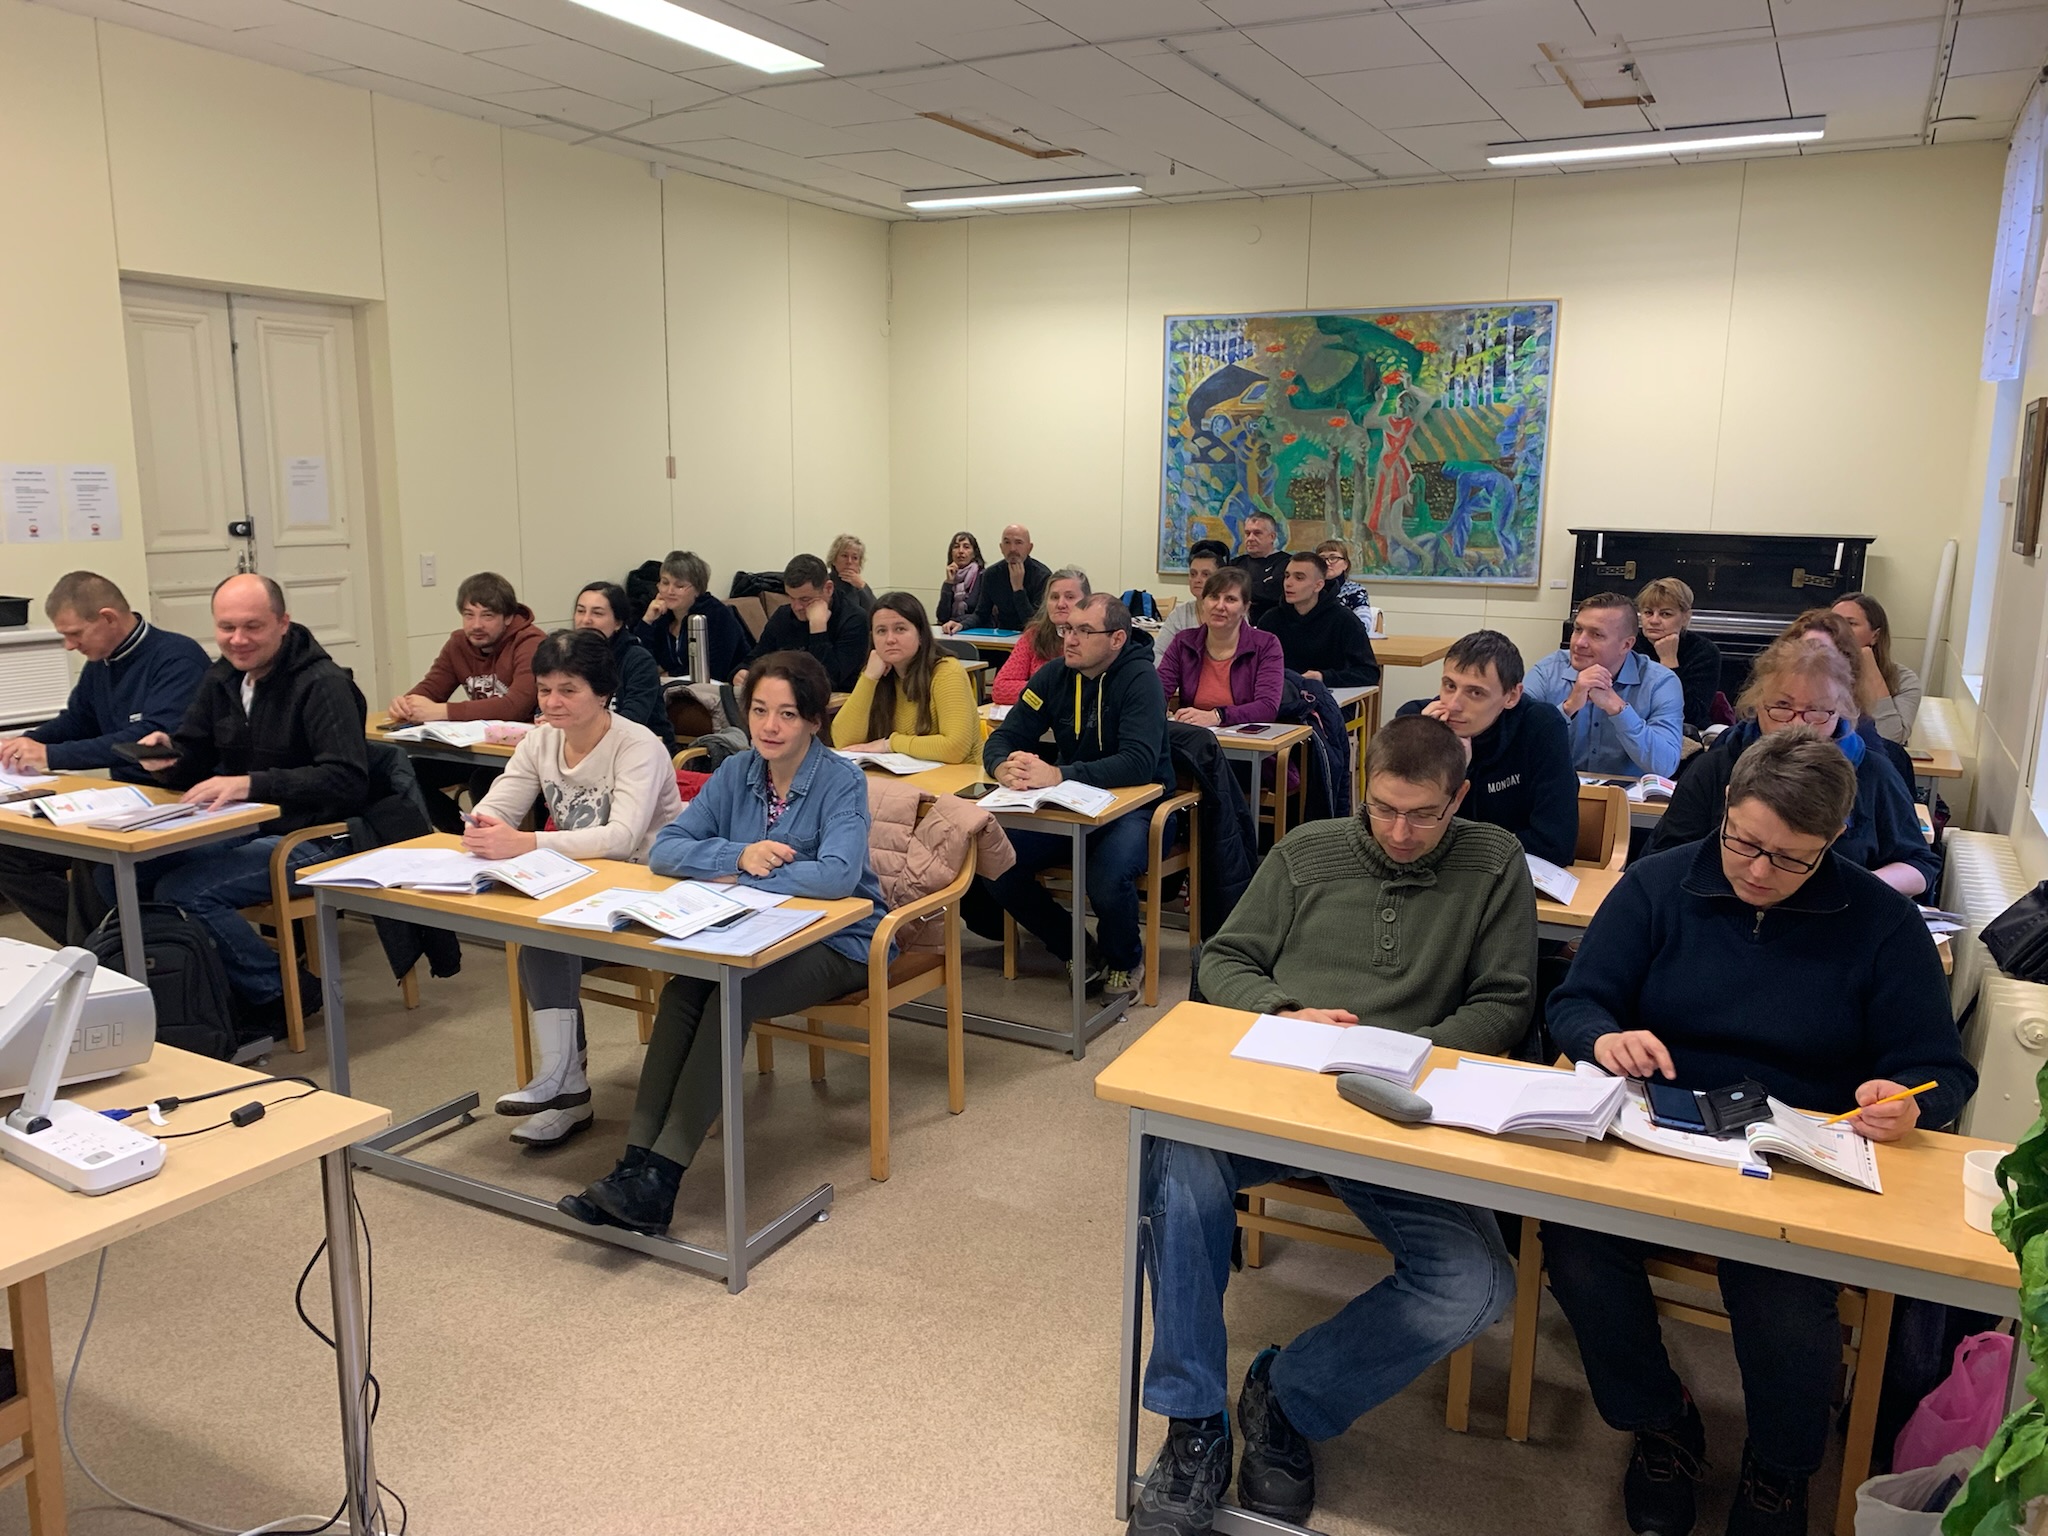 El CPEPA Jacetania participa en un “Job shadowing” en Finlandia